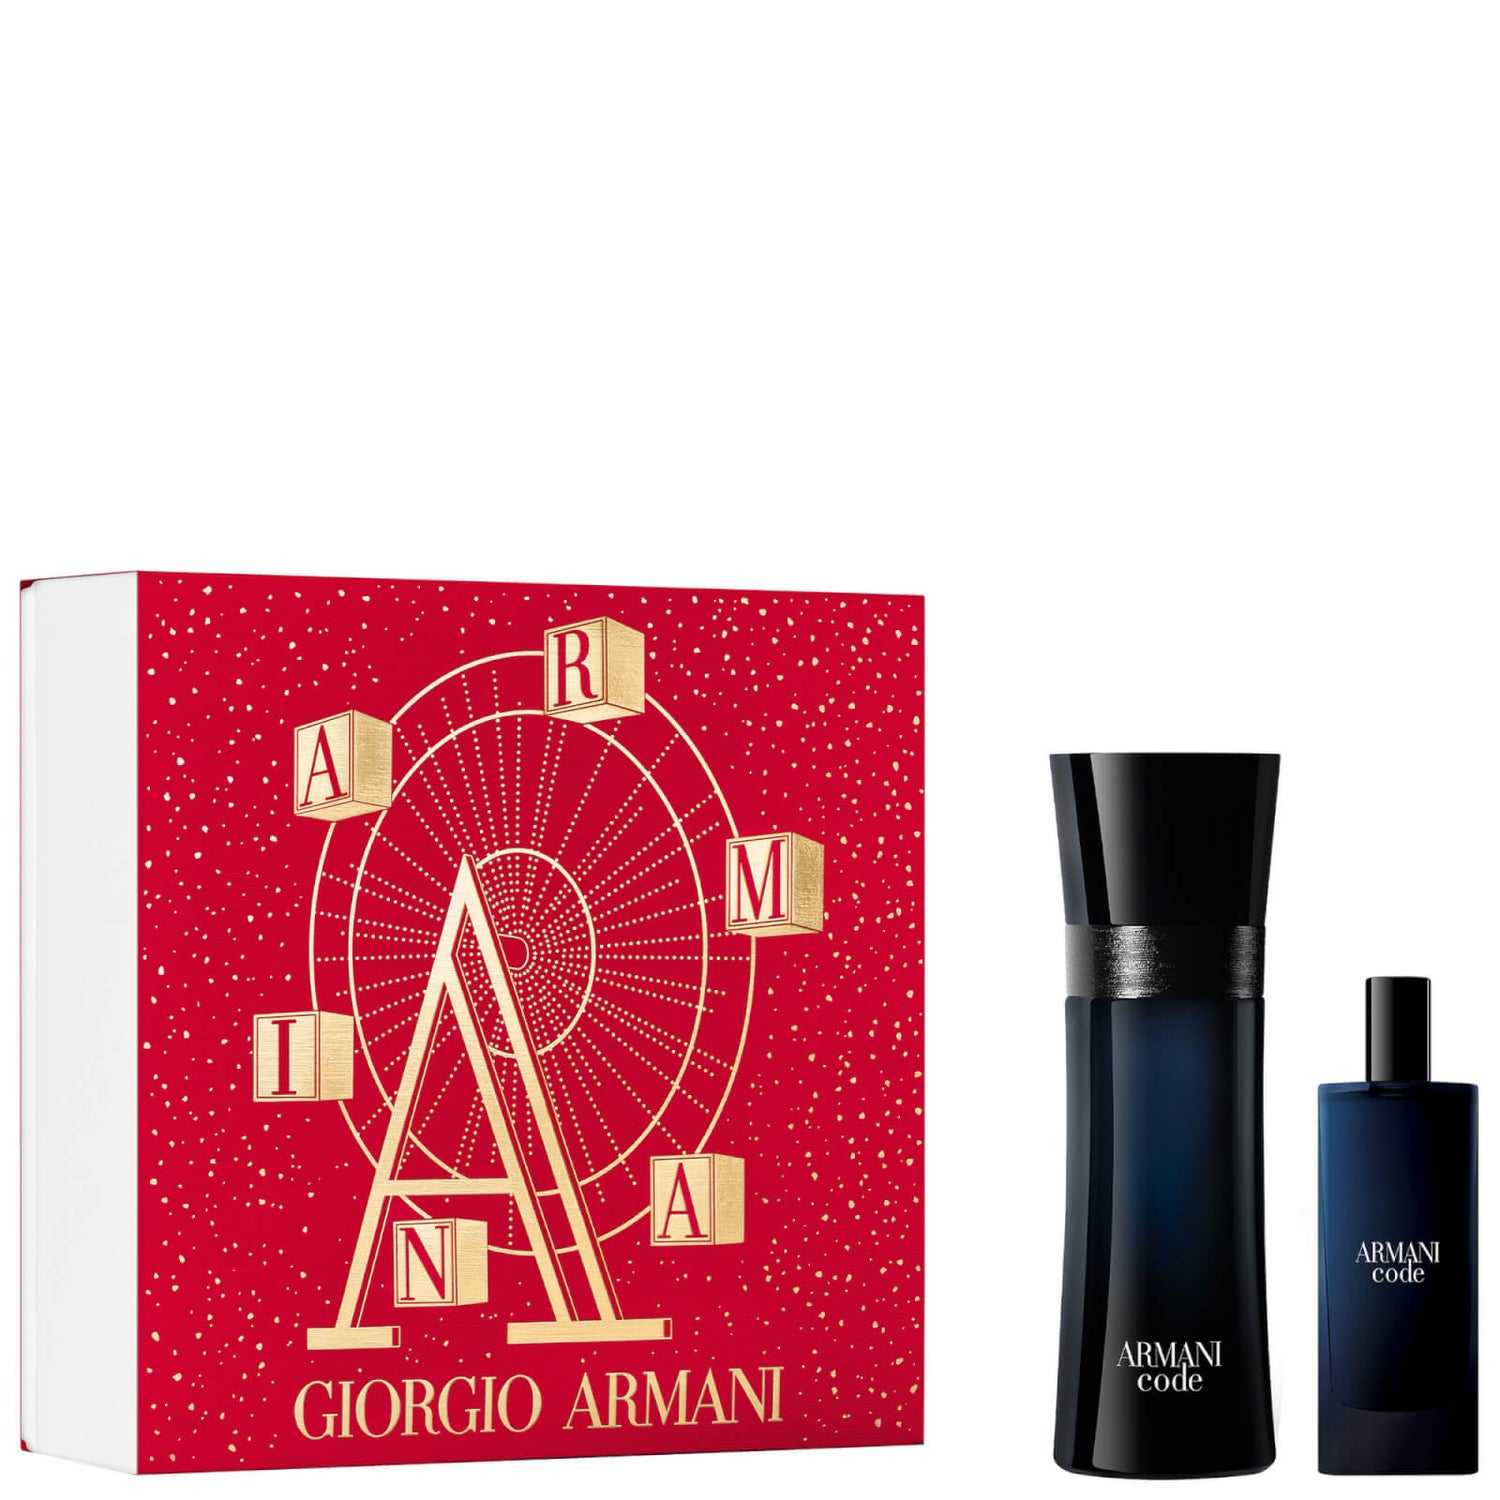 Armani Code Homme Eau De Toilette Gift Set for Him